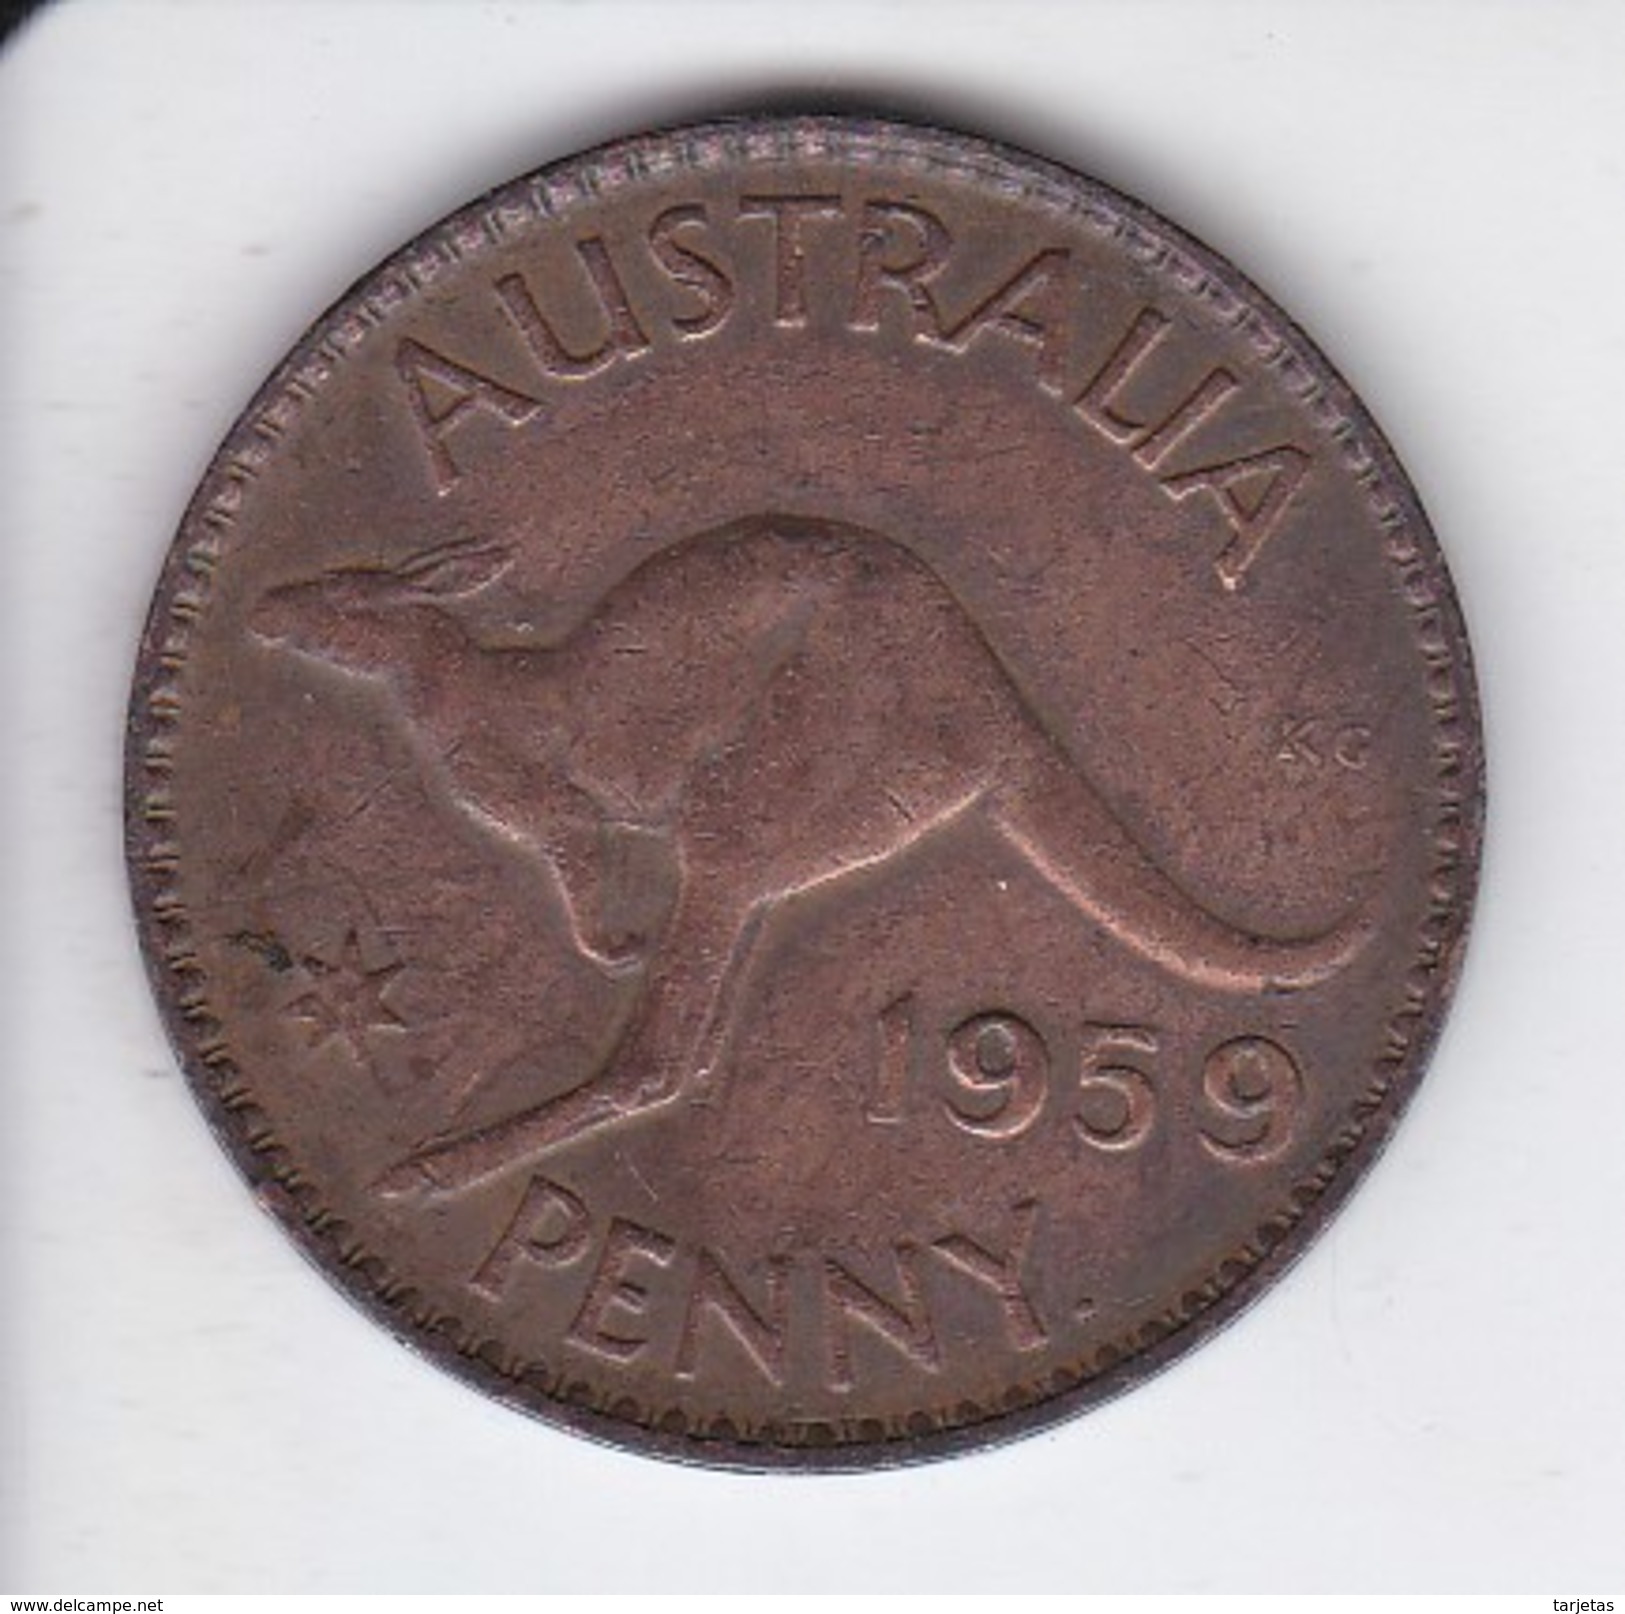 MONEDA DE AUSTRALIA DE 1 PENNY DEL AÑO 1959 CANGURO (KANGAROO) - Penny